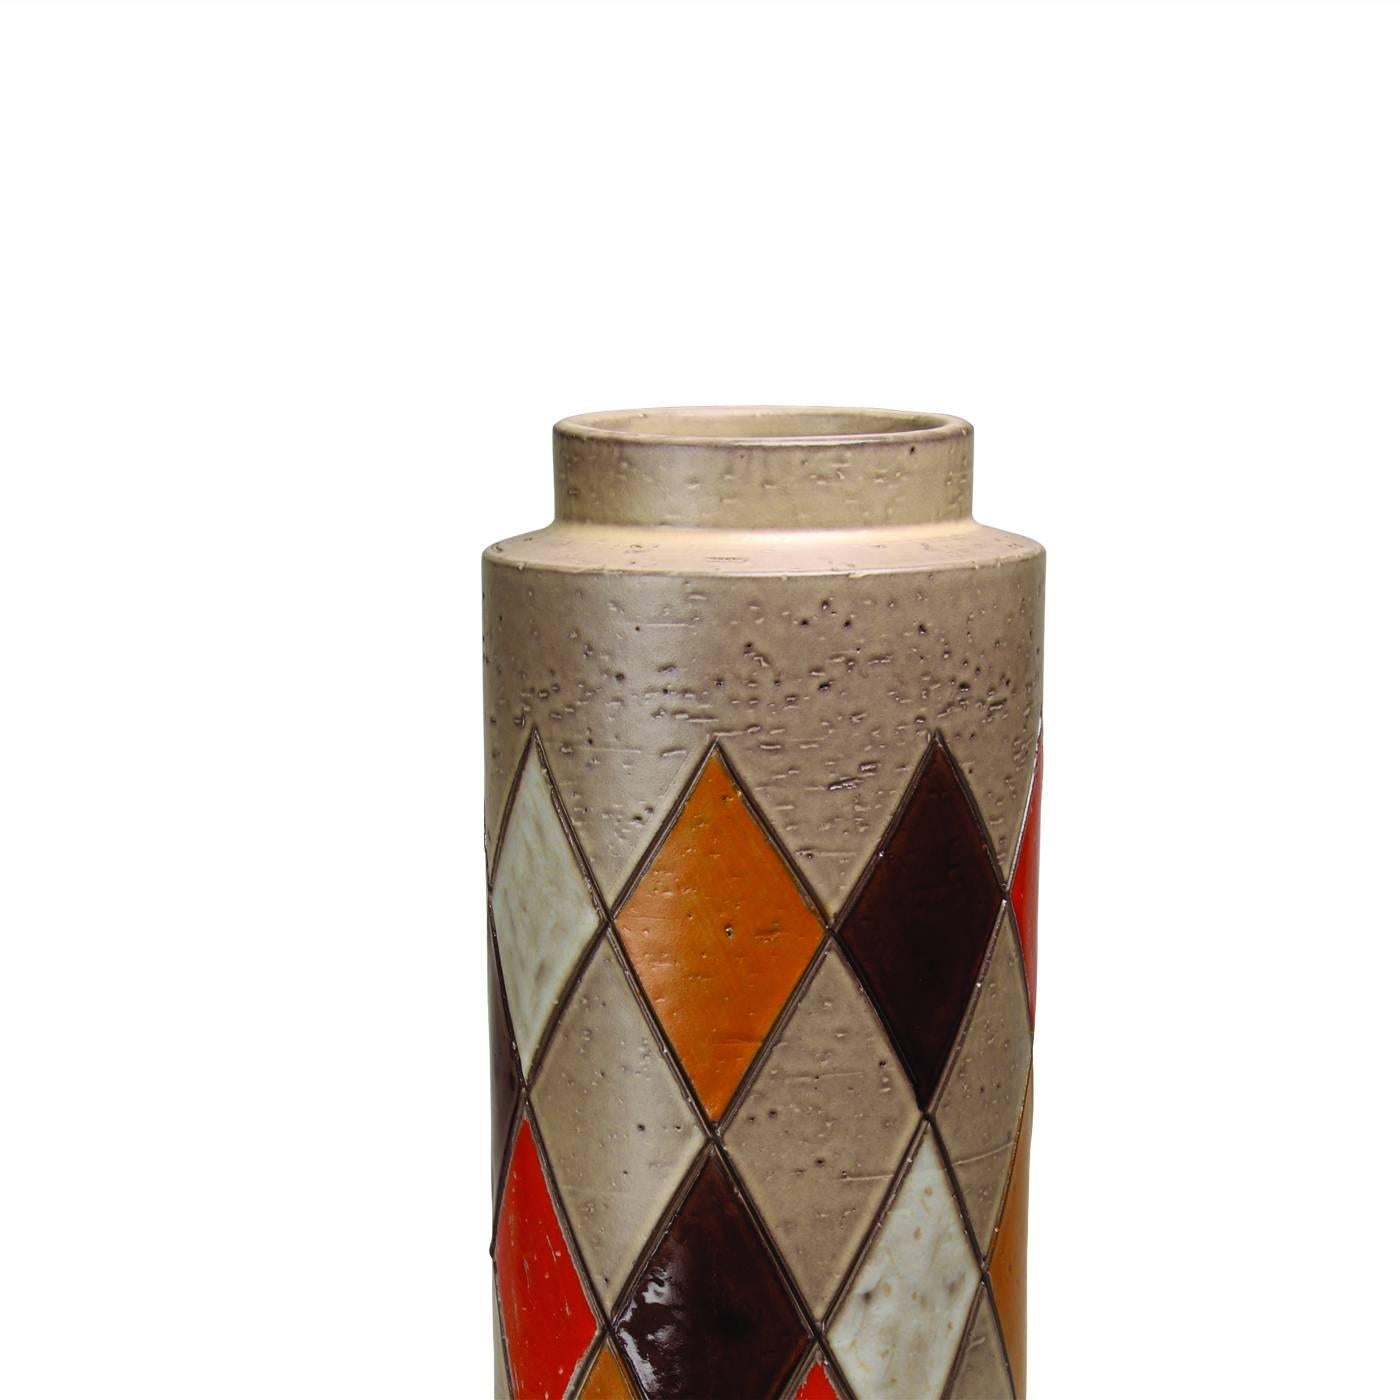 Ce vase cylindrique en argile blanche fait partie d'une édition limitée de 149 pièces conçue en 1961 par Aldo Londi, alors directeur artistique de Bitossi. La surface irrégulière du vase est décorée, dans la partie centrale du corps, d'une série de